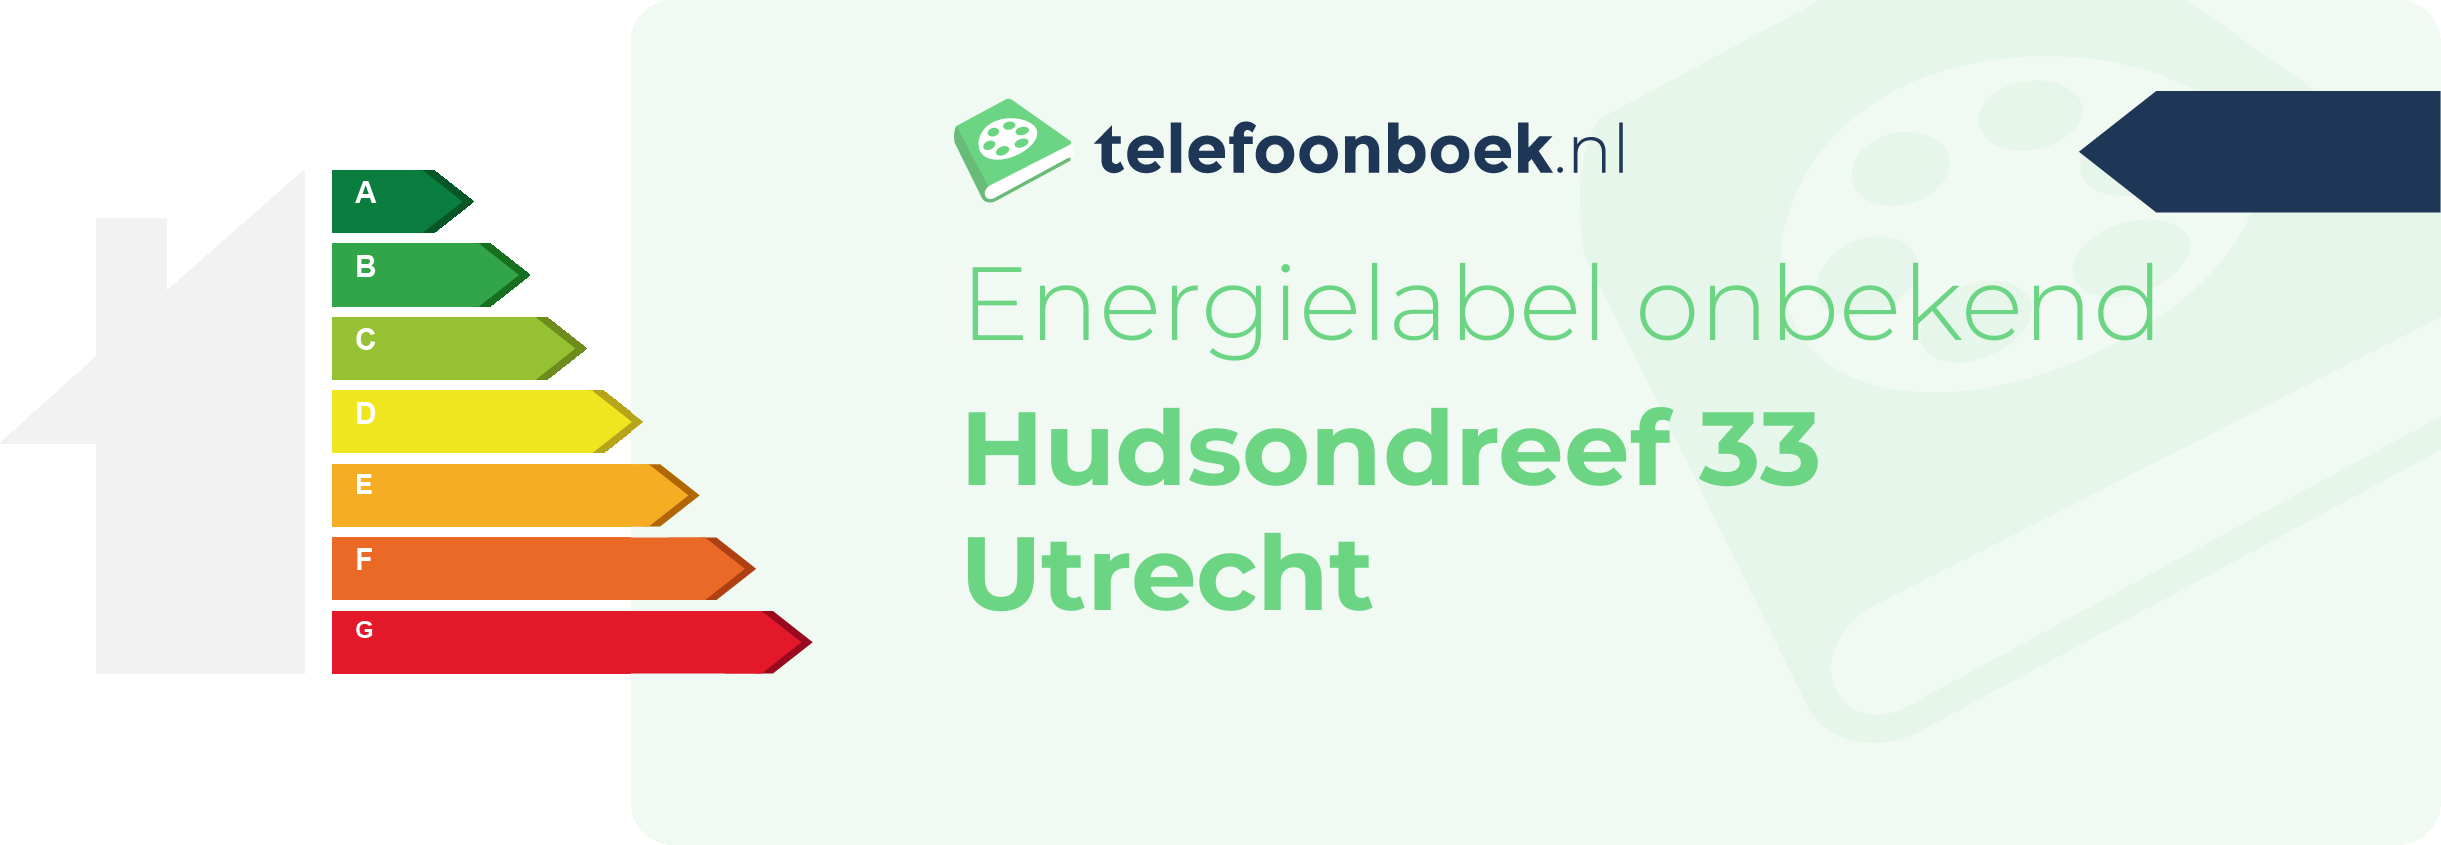 Energielabel Hudsondreef 33 Utrecht